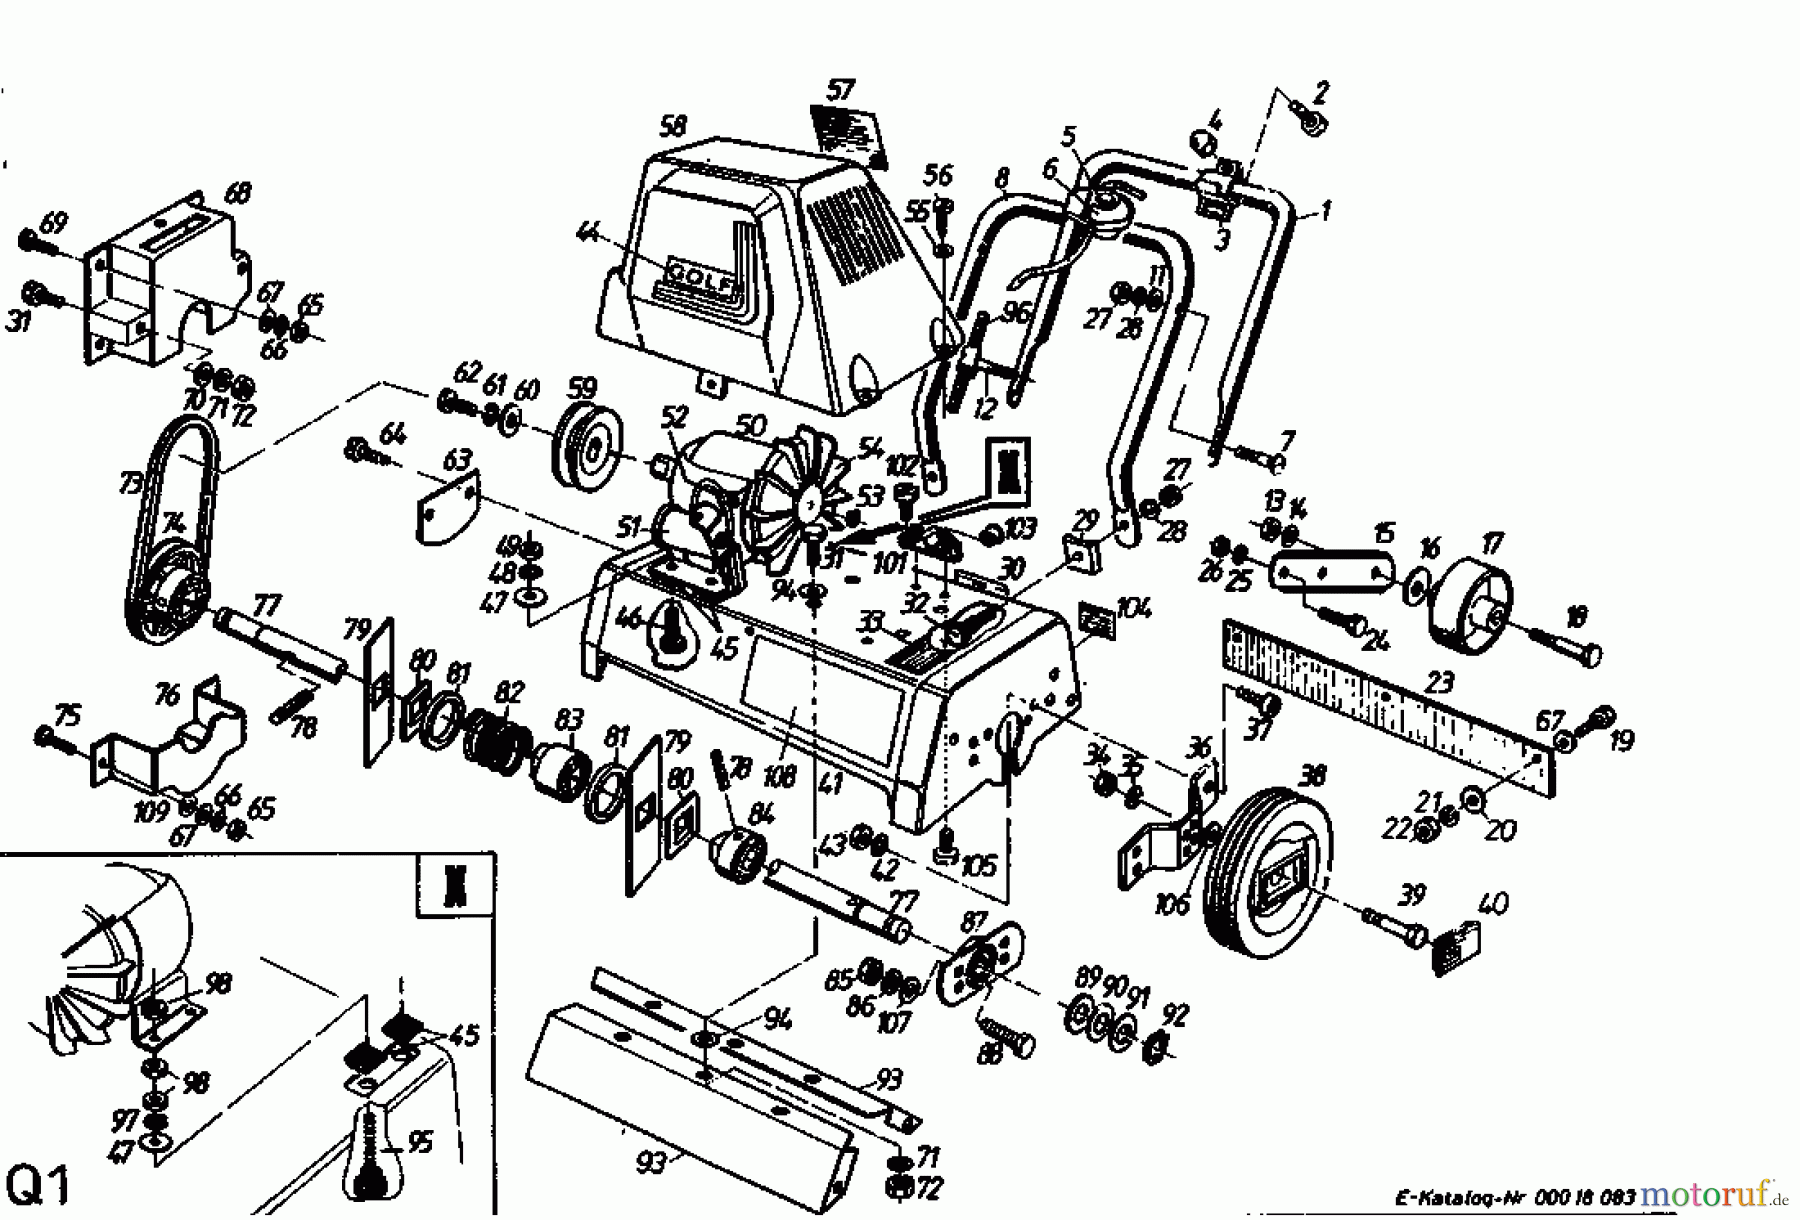  Golf Scarificateur électrique 135 VE 02645.08  (1993) Machine de base